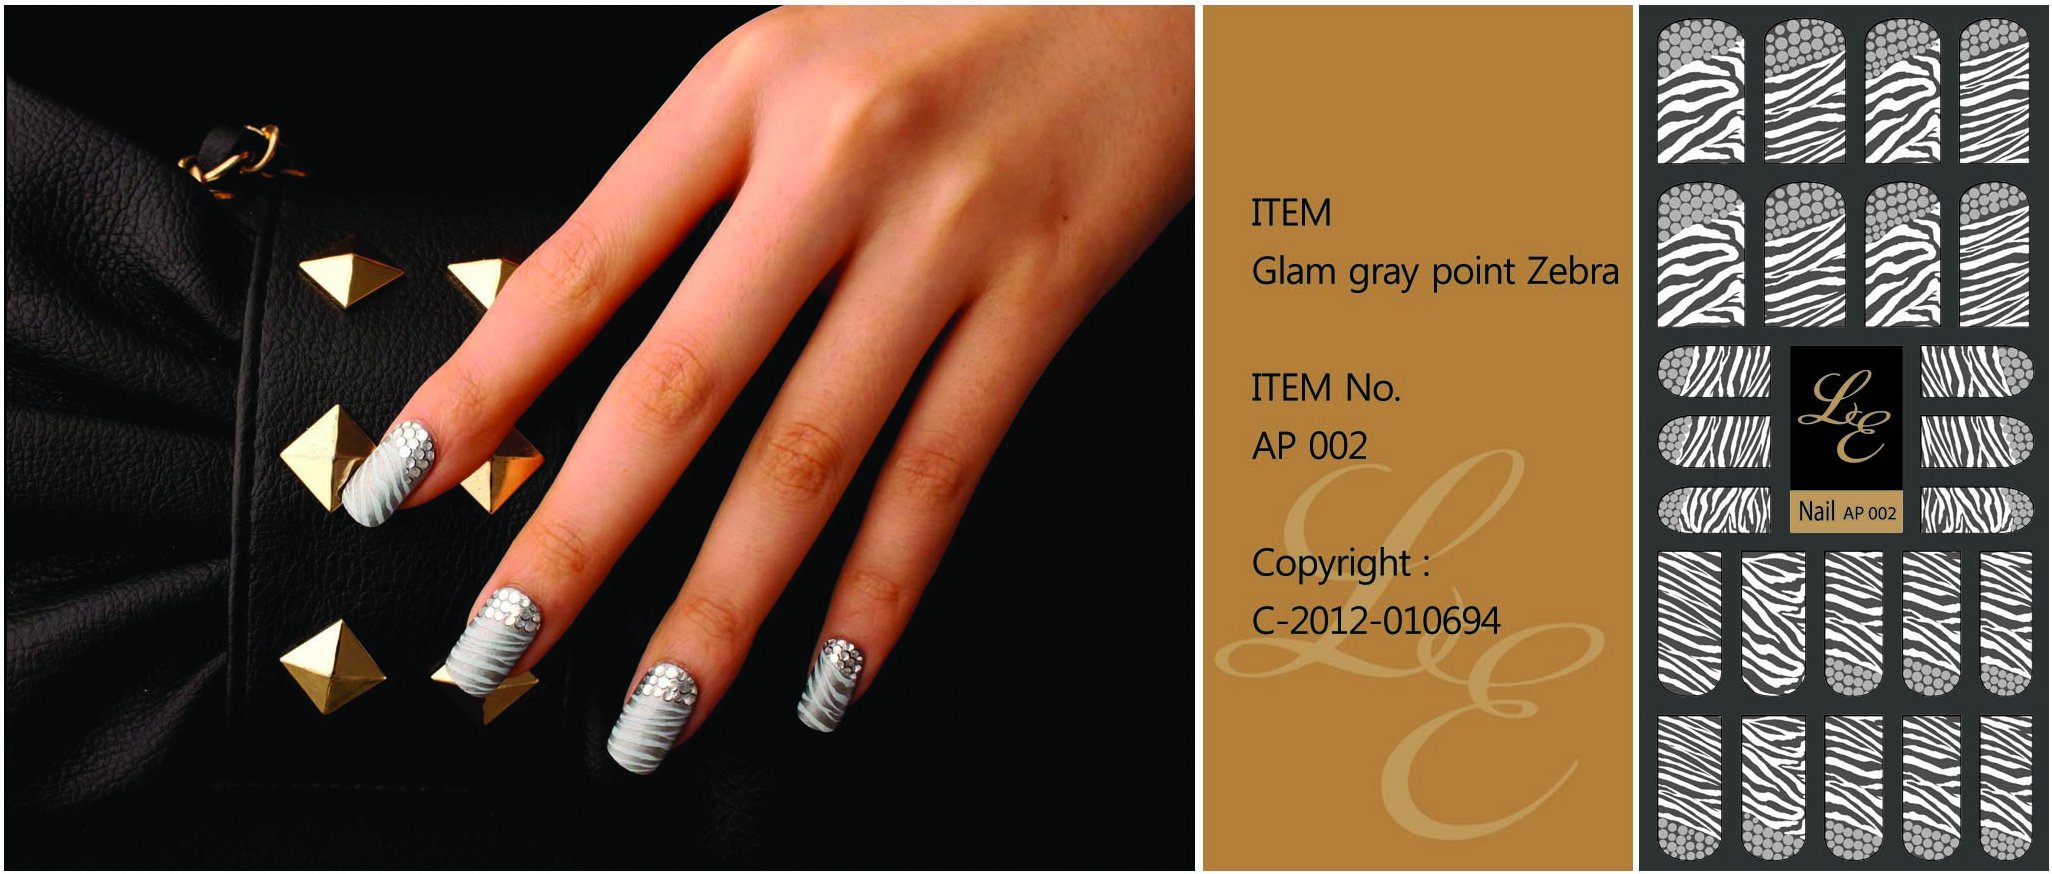 Glam gray point Zebra